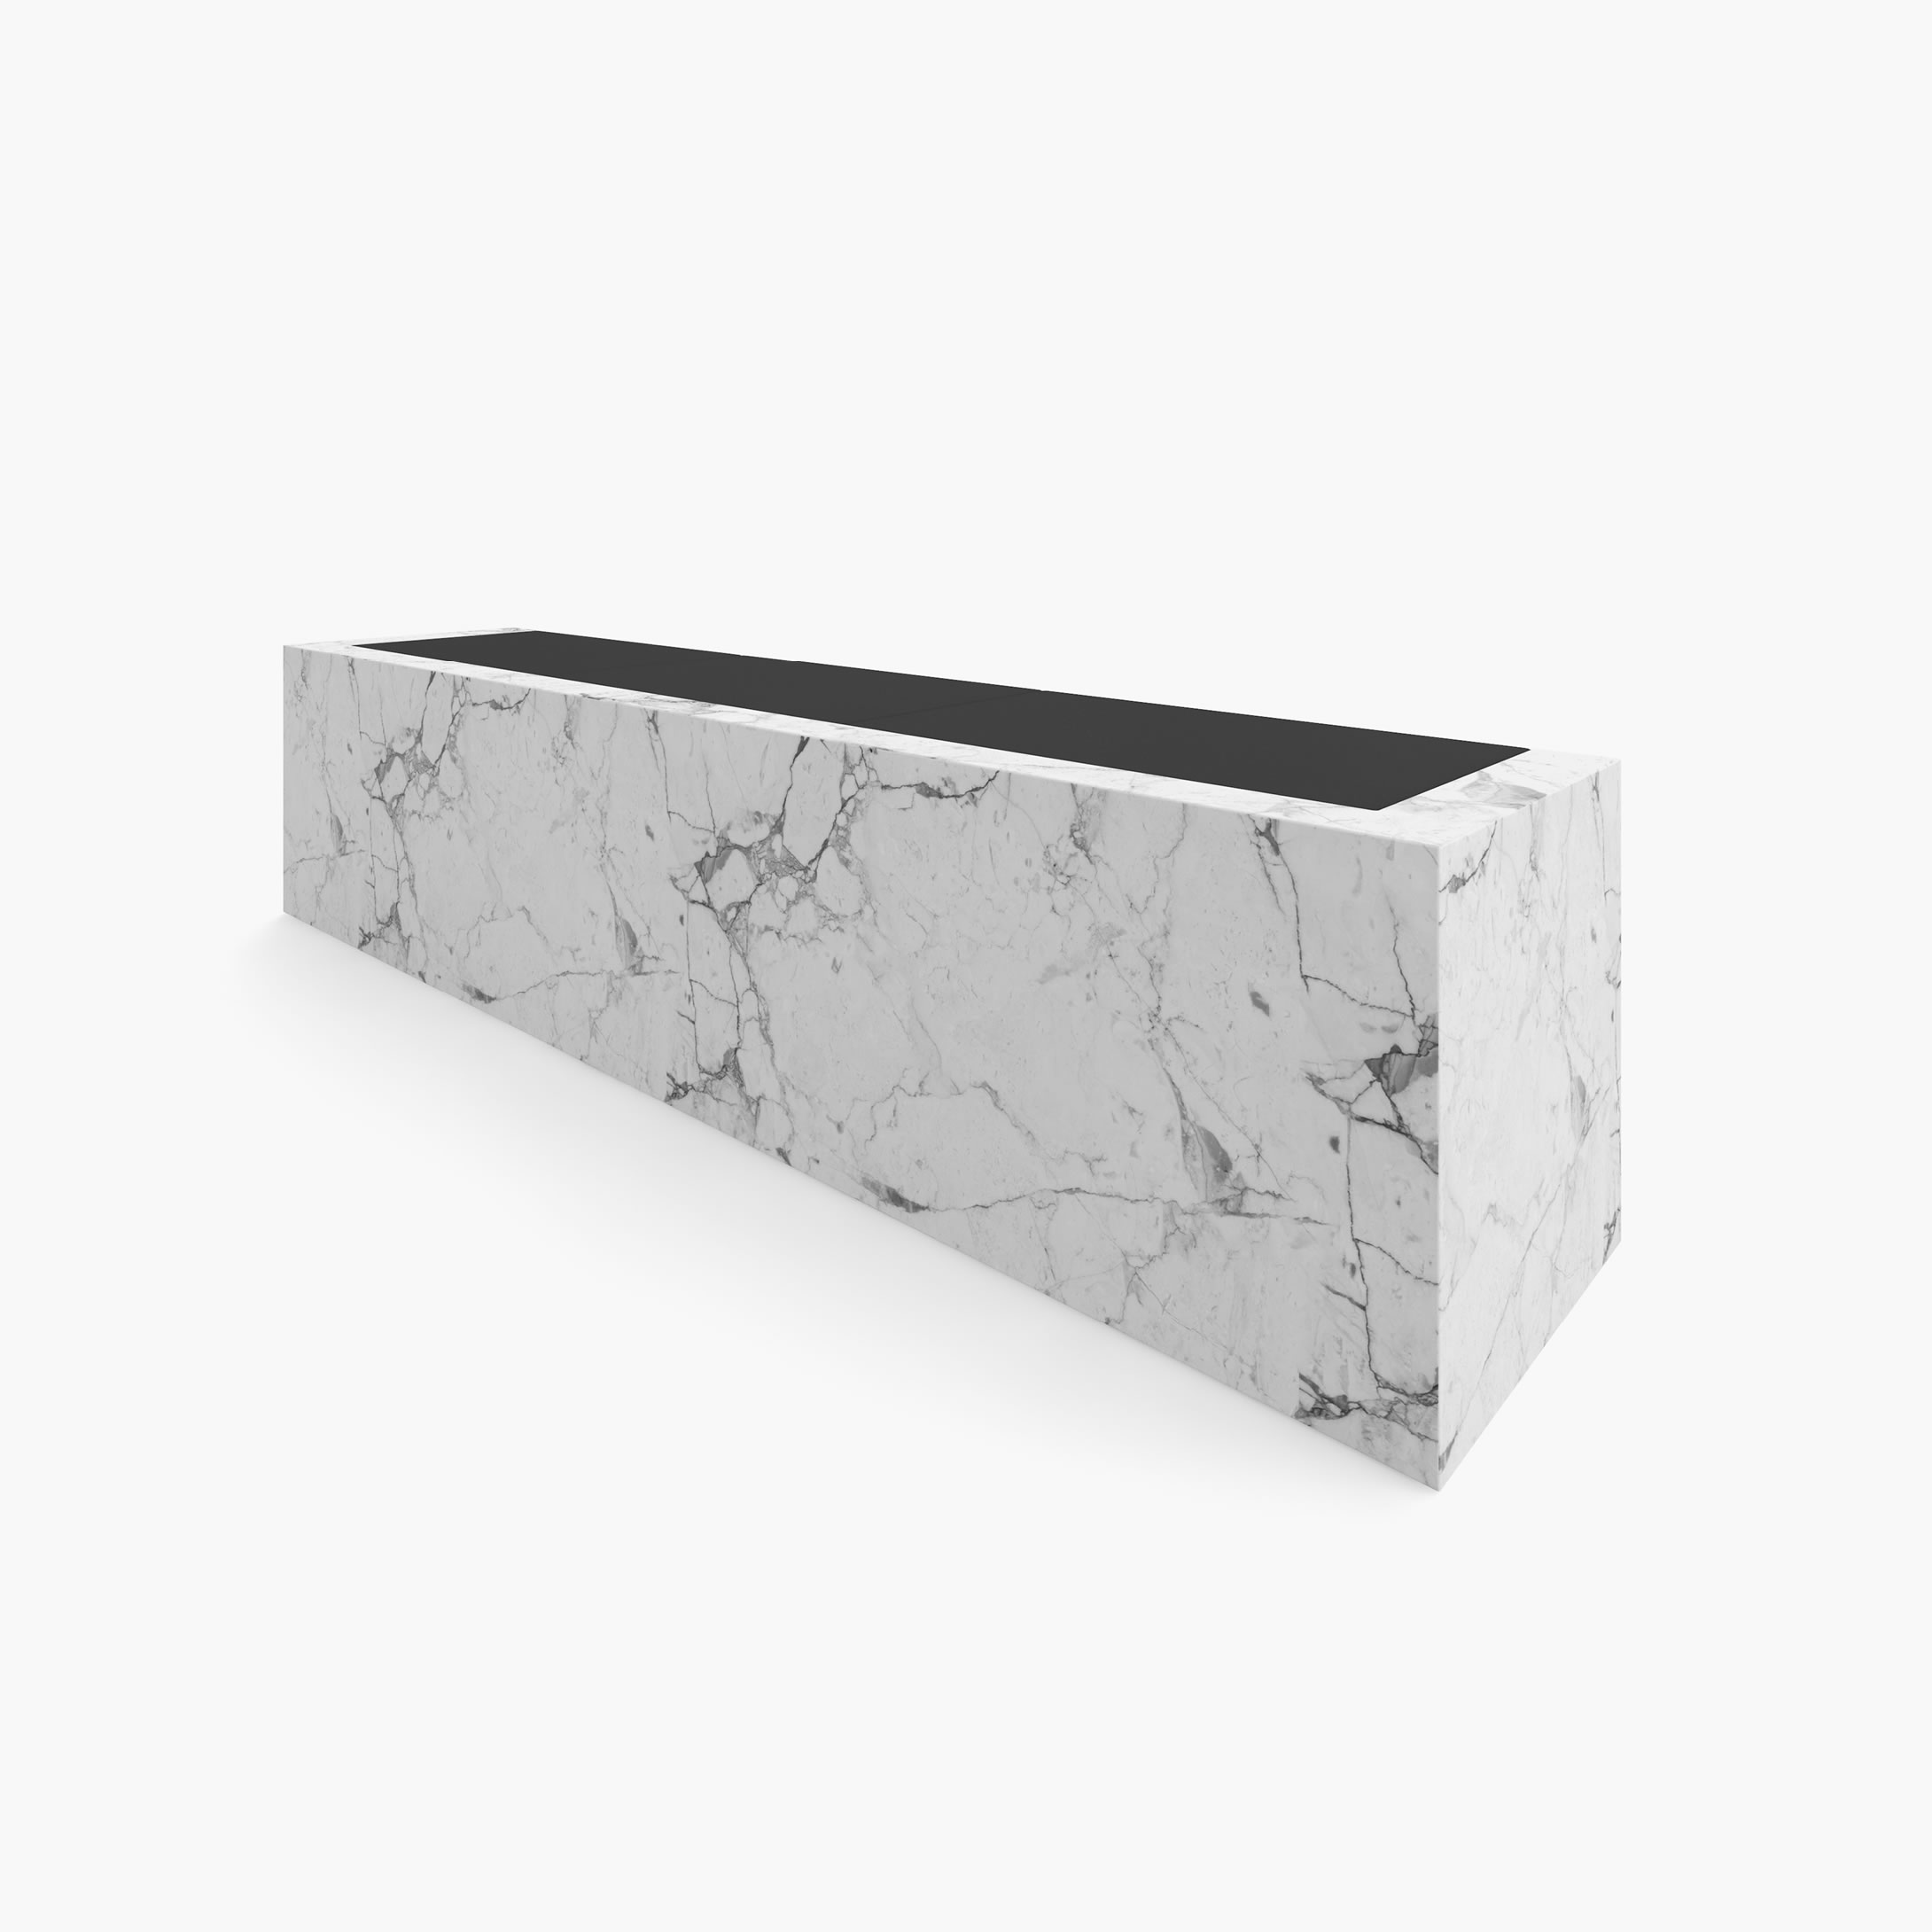 Sideboard mit Schubladen Weiss Arabescato Marmor minimalistisch privater Arbeitsbereich Luxus Konsolen  Sideboards FS 407 FELIX SCHWAKE